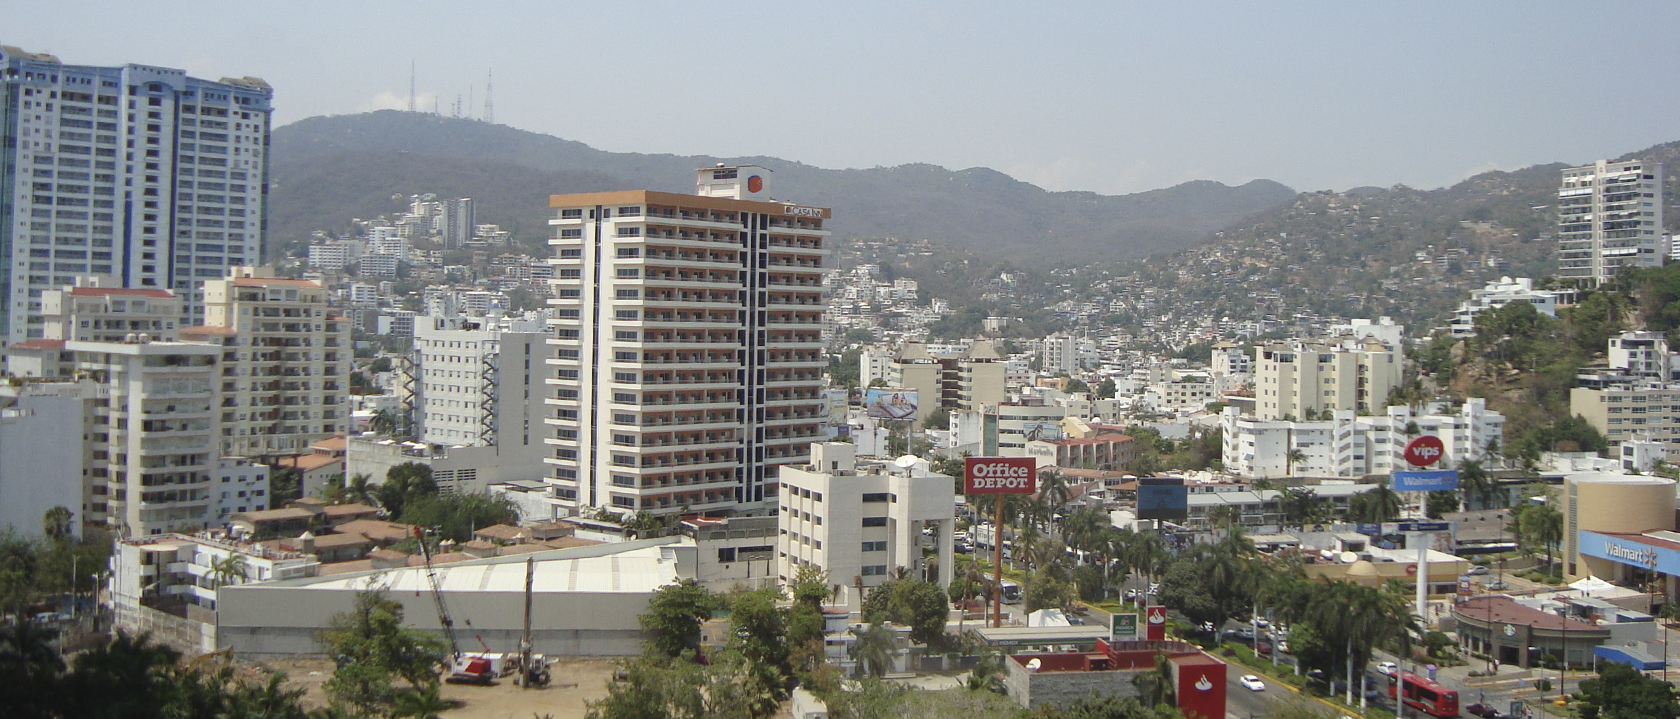 Acapulco 3